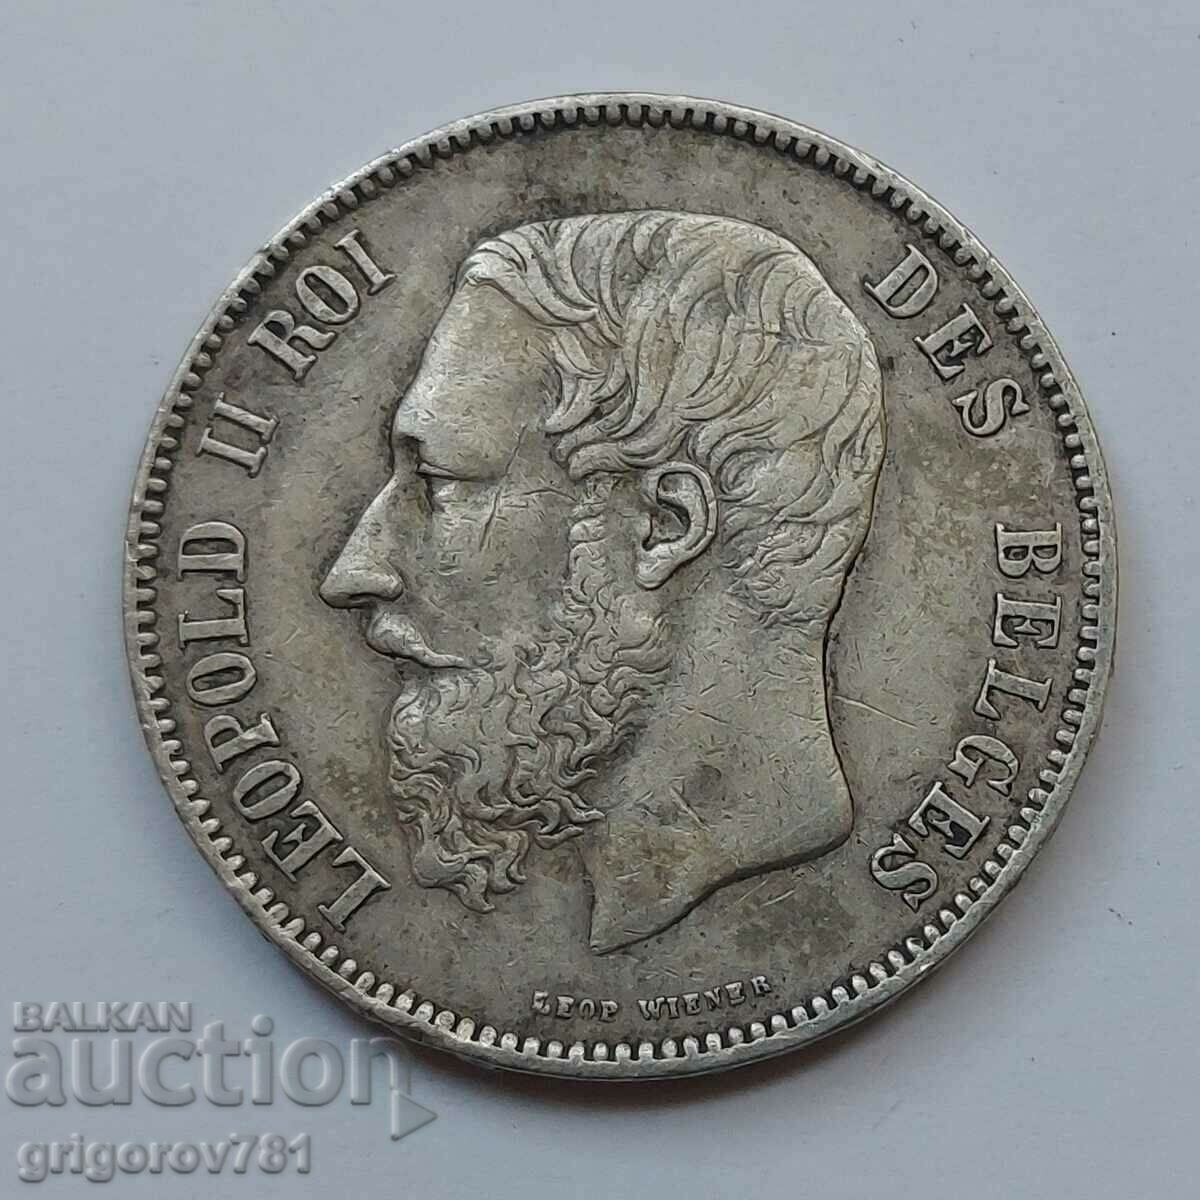 Ασημένιο 5 Φράγκα Βέλγιο 1873 - Ασημένιο νόμισμα #230